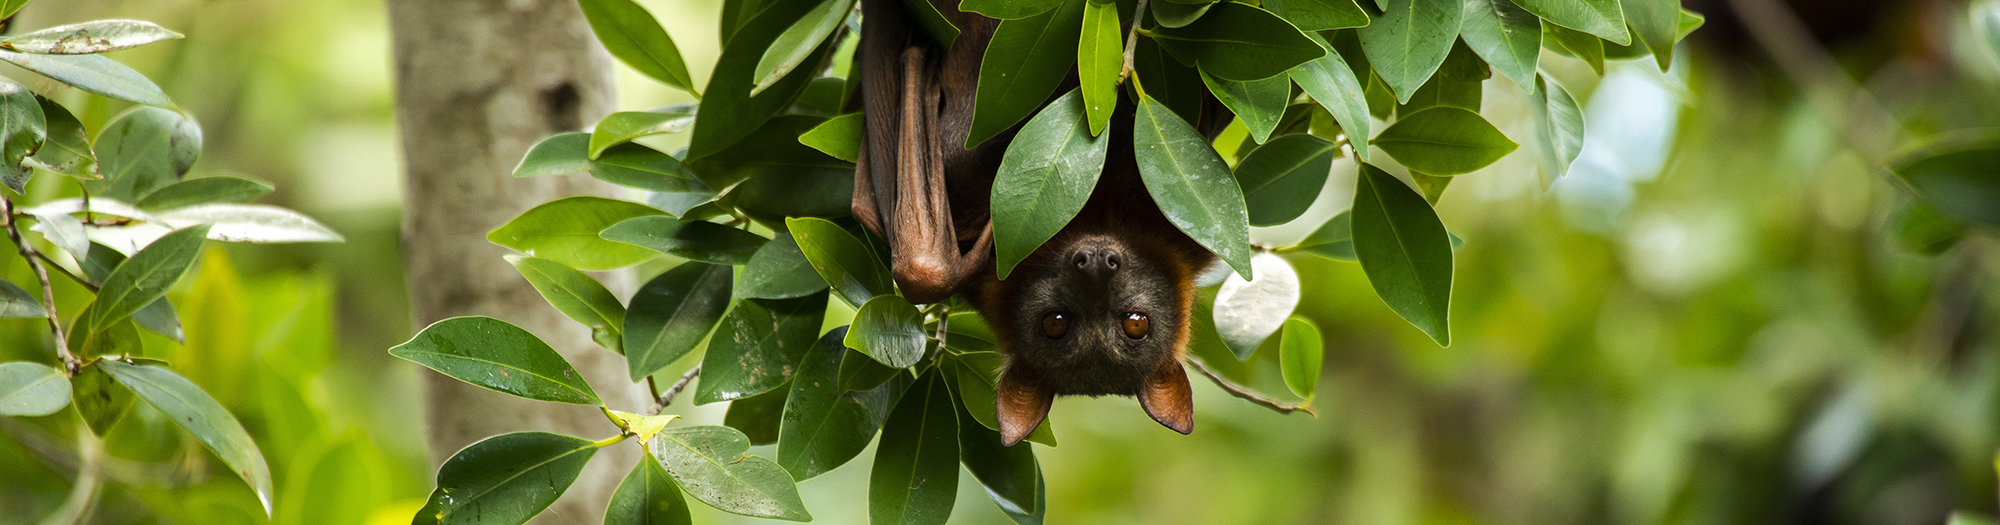 Bat hanging in tree